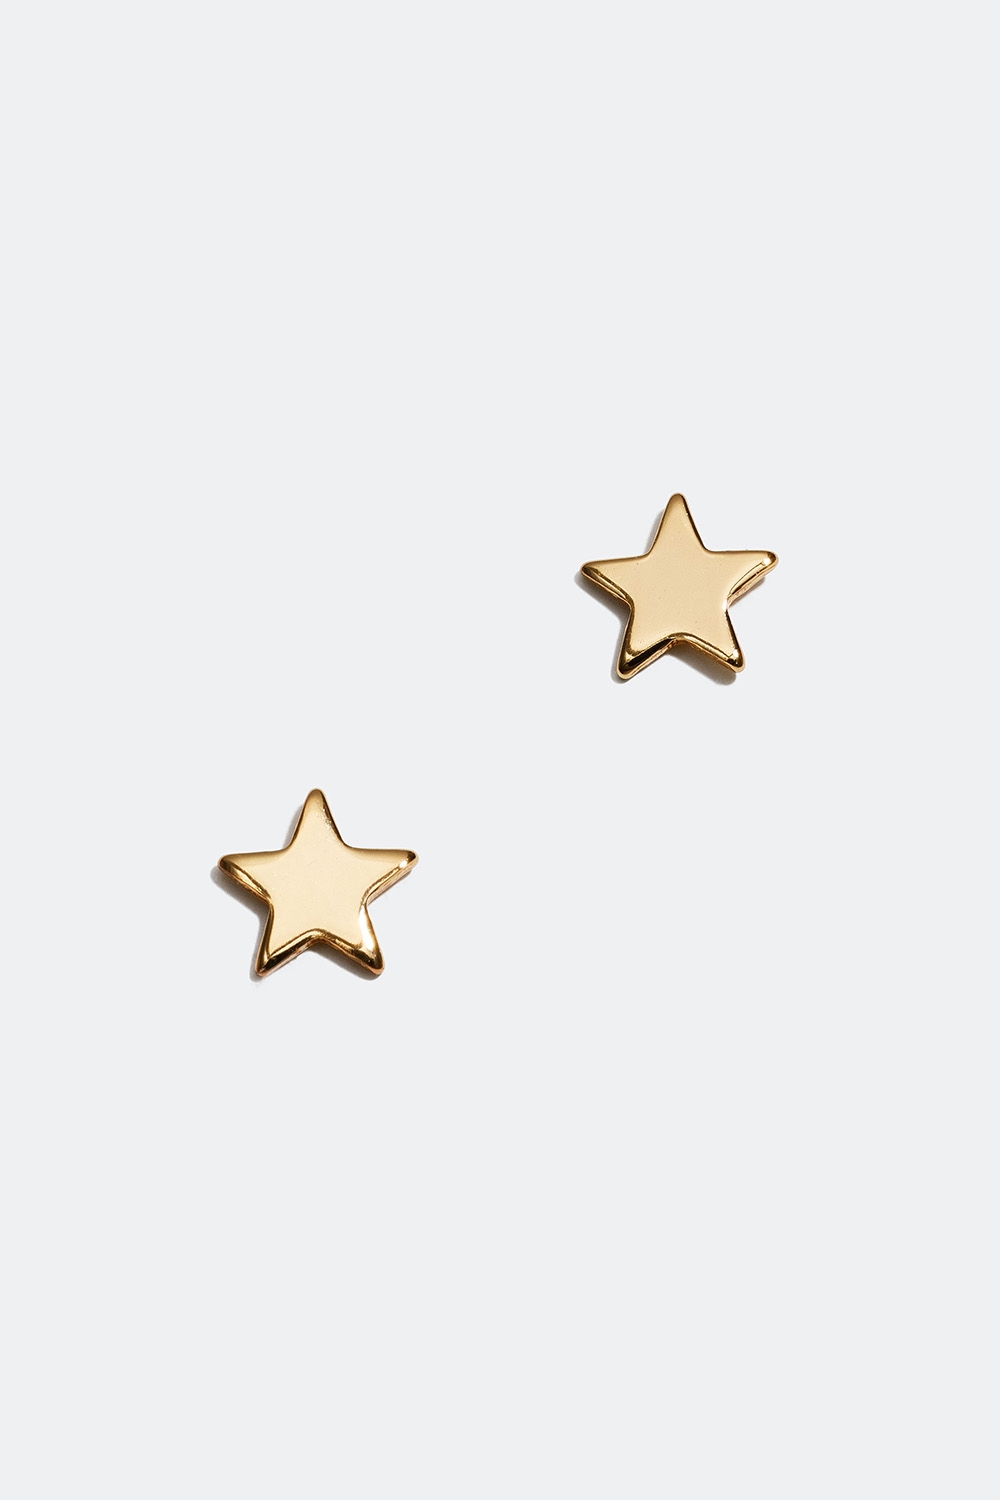 Korvakorut, joissa on tähtiä ja 18 karaatin kultaus ryhmässä Lapsille / Lasten korut / Lasten korvakorut @ Glitter (405000062002)